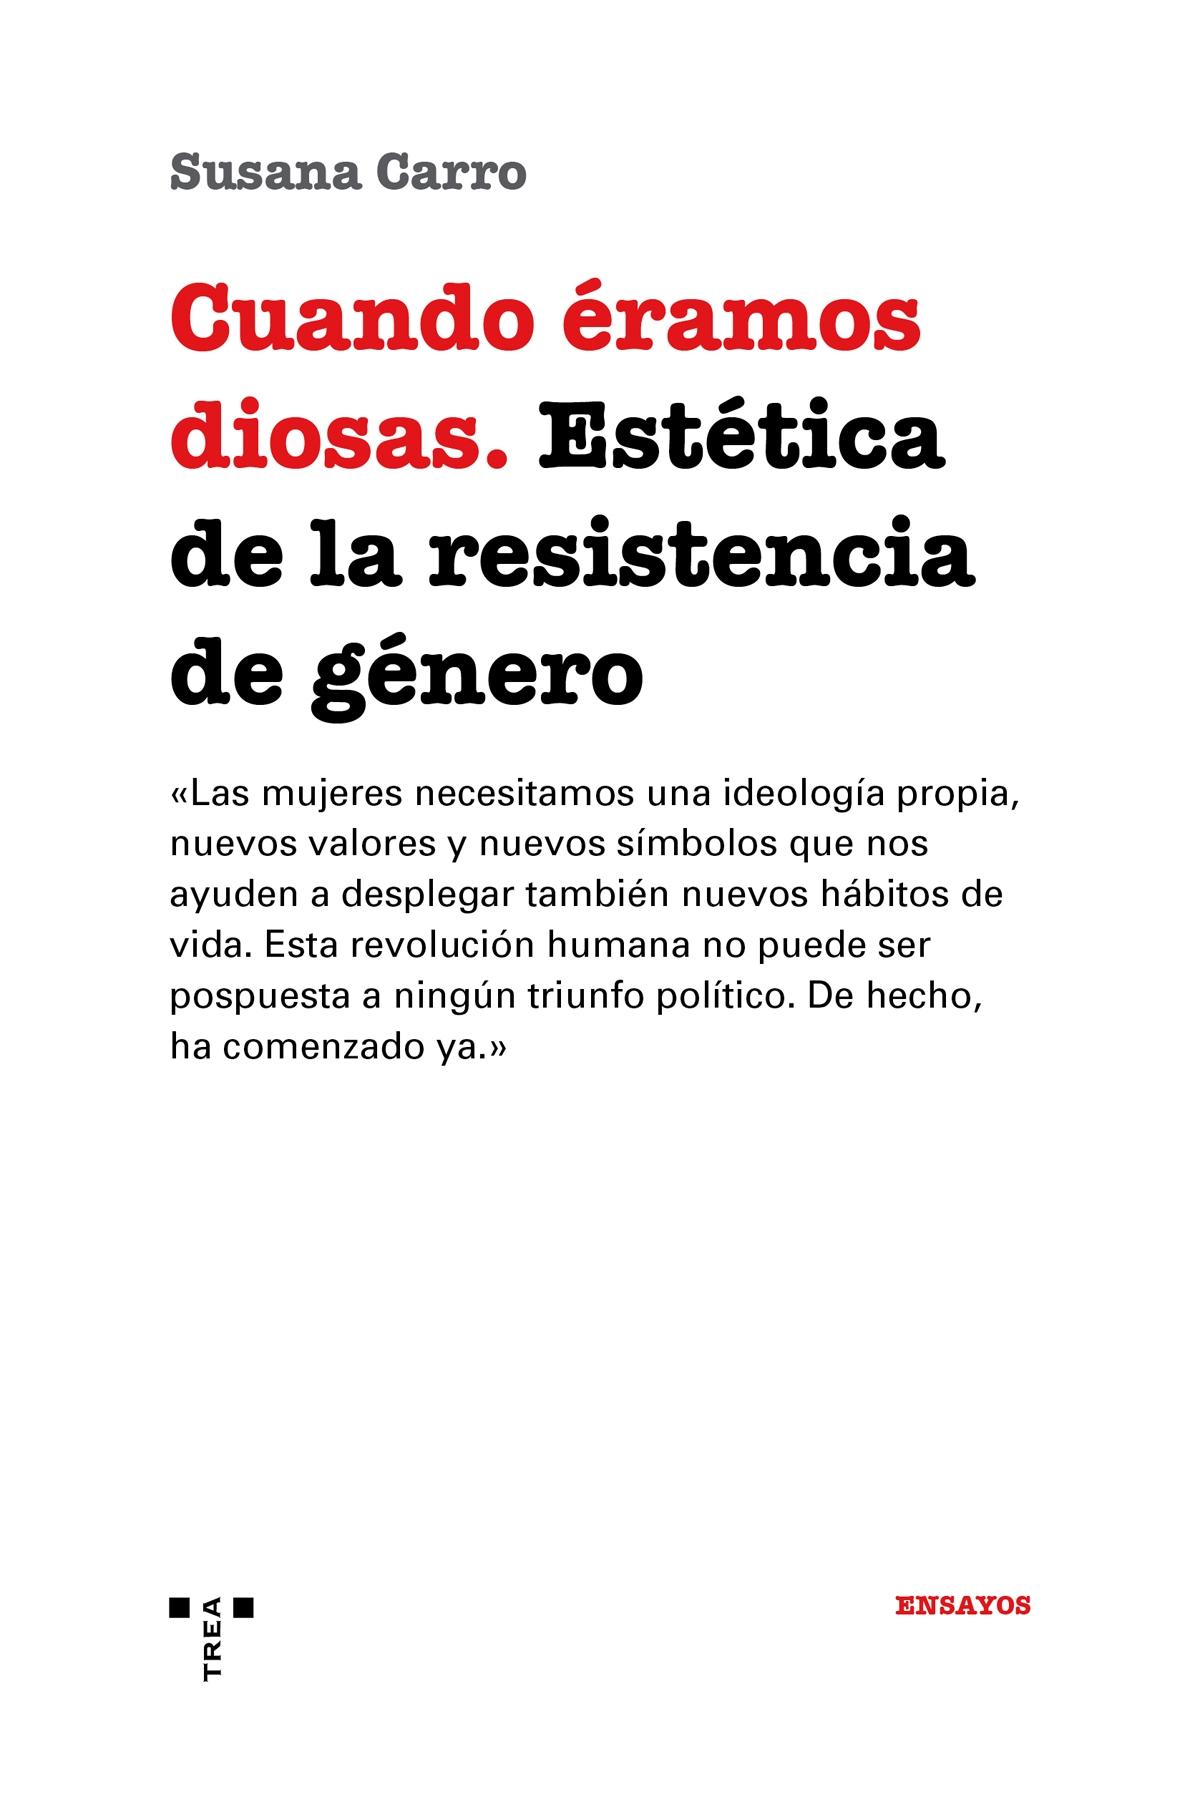 CUANDO ERAMOS DIOSAS "Estética de la resistencia de género"